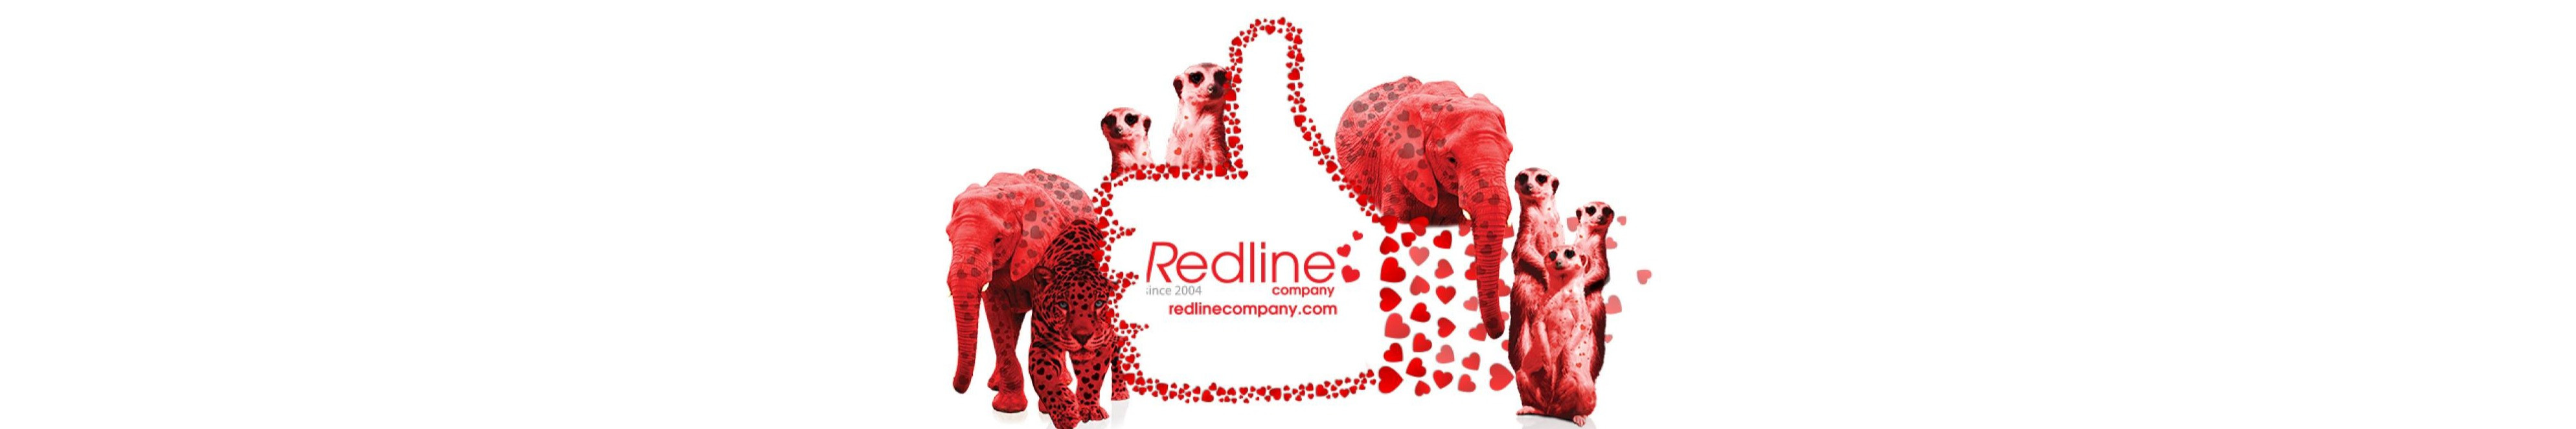 Leading marketing agency in Marbella - Redline